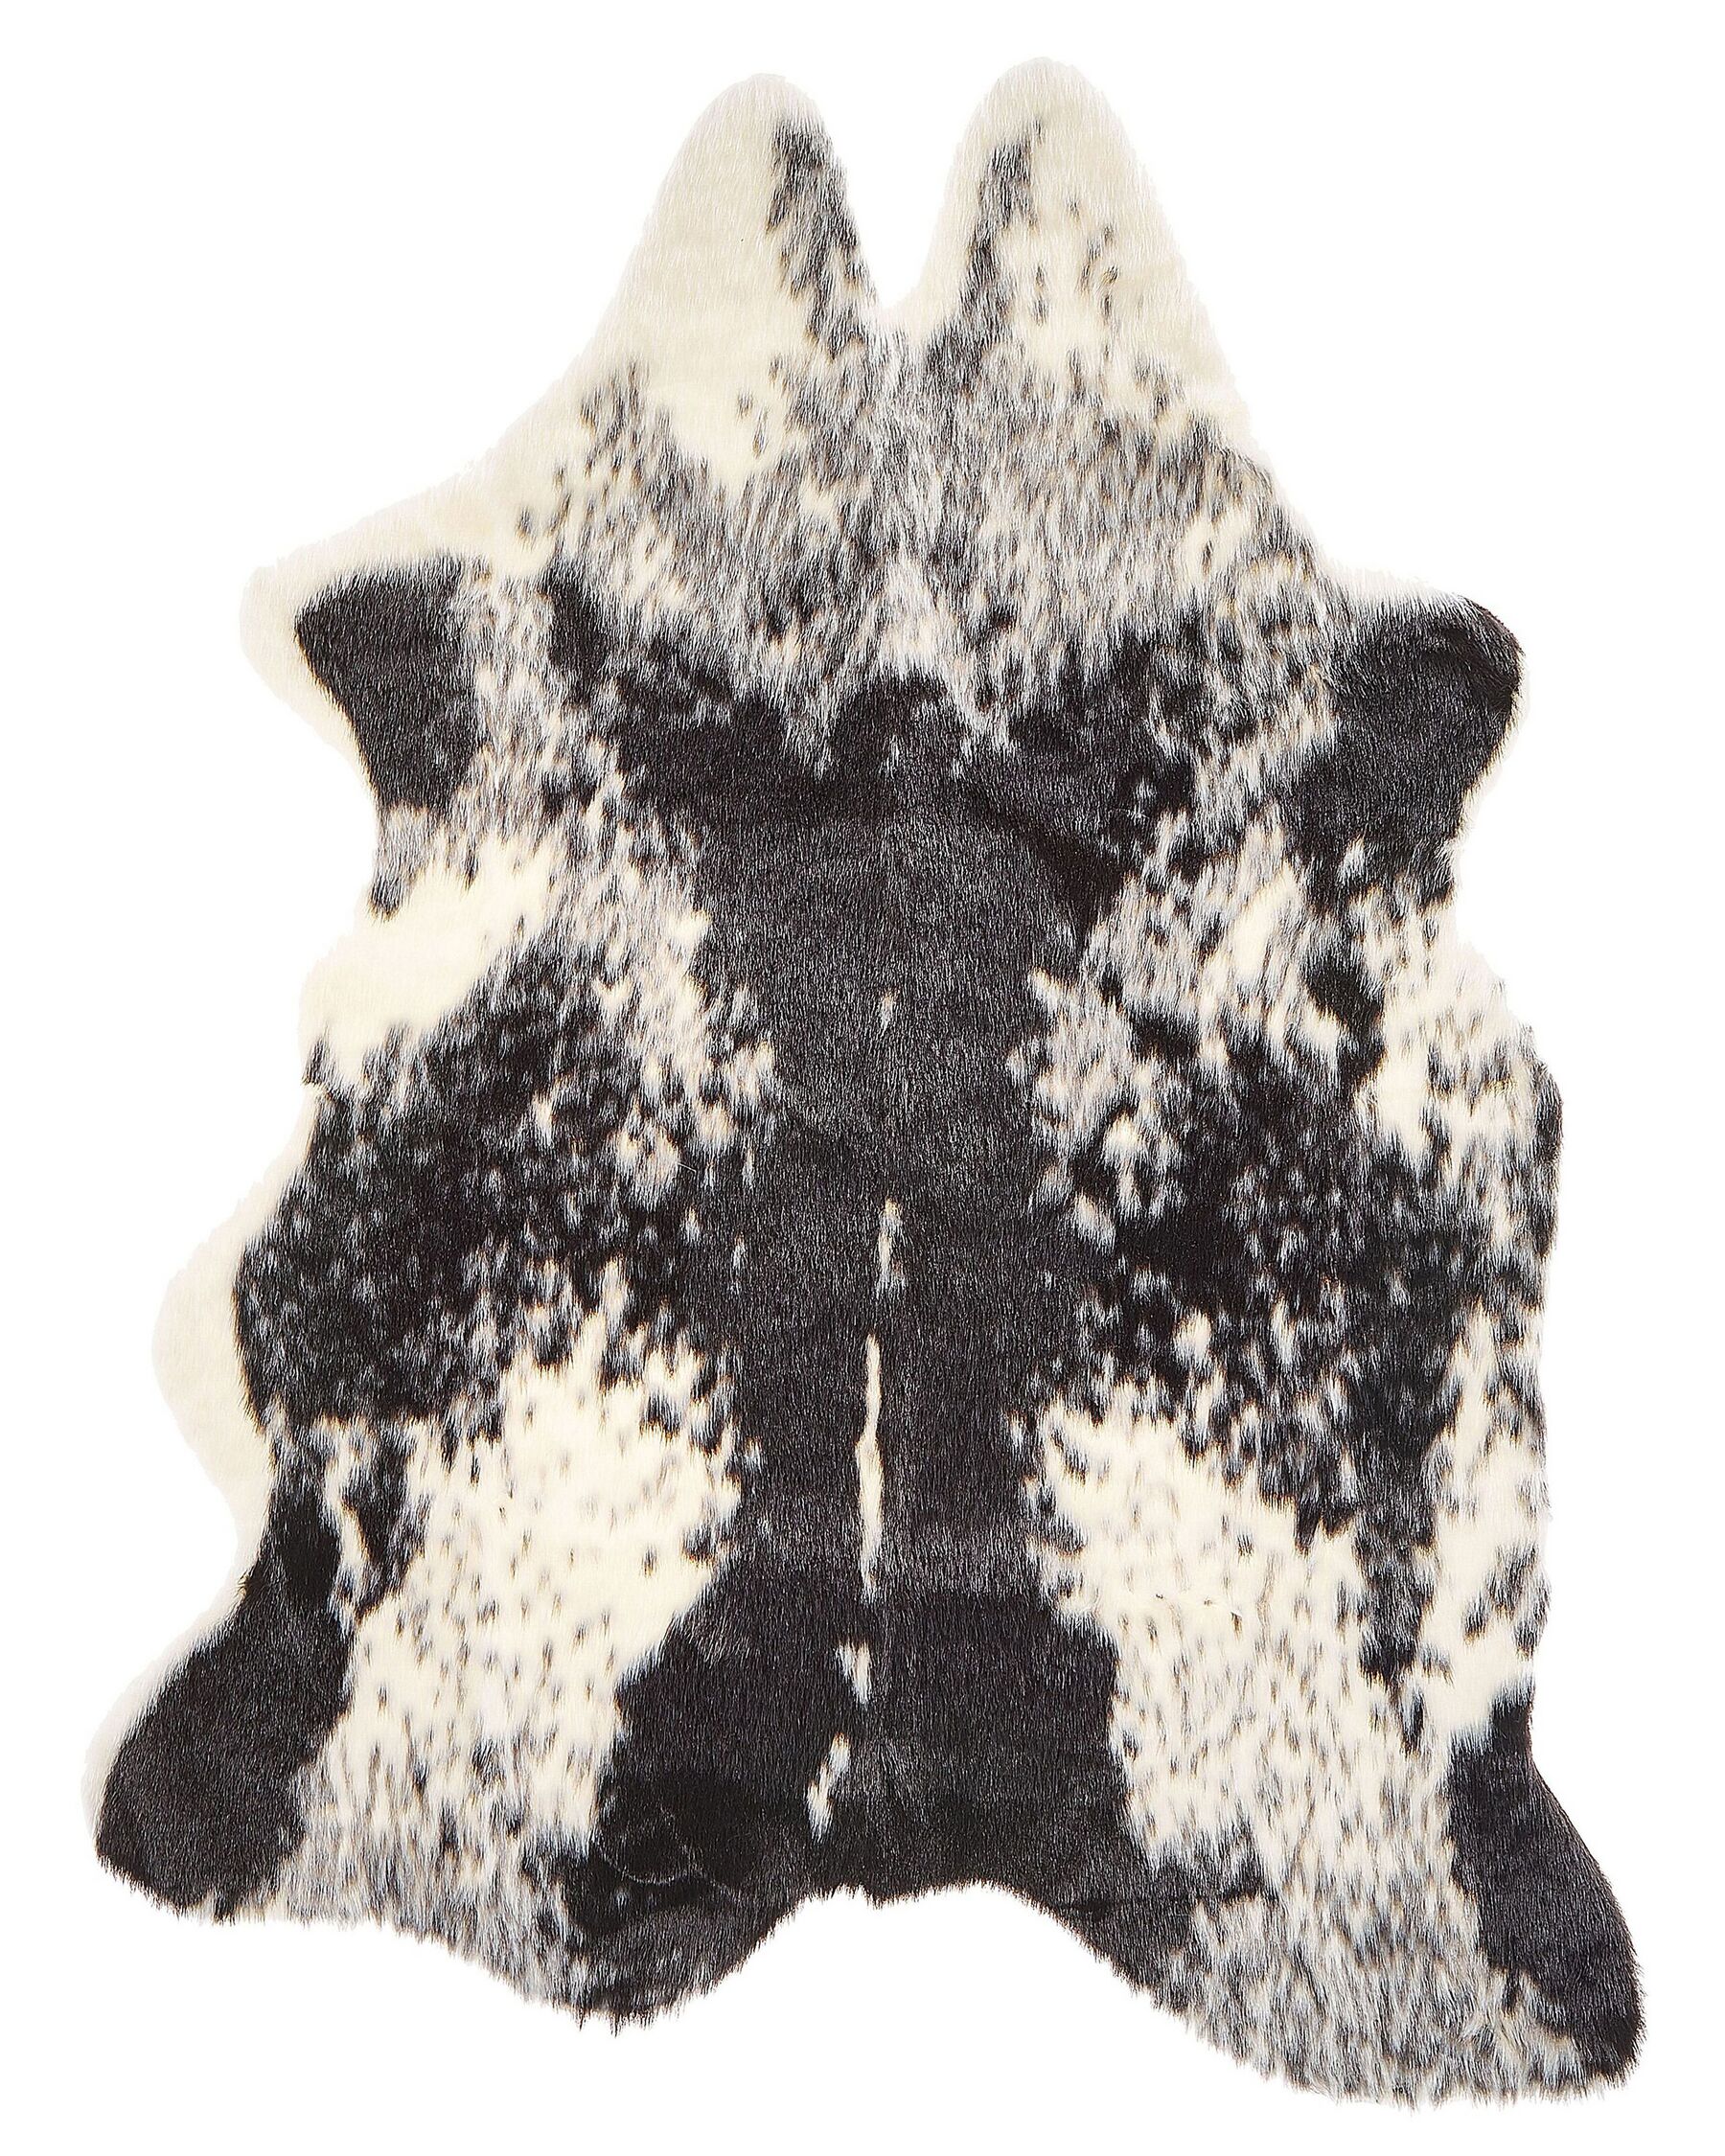 Tapis en fausse fourrure de vache noire et blanche, 60 x 90 cm NAMBUNG_790225